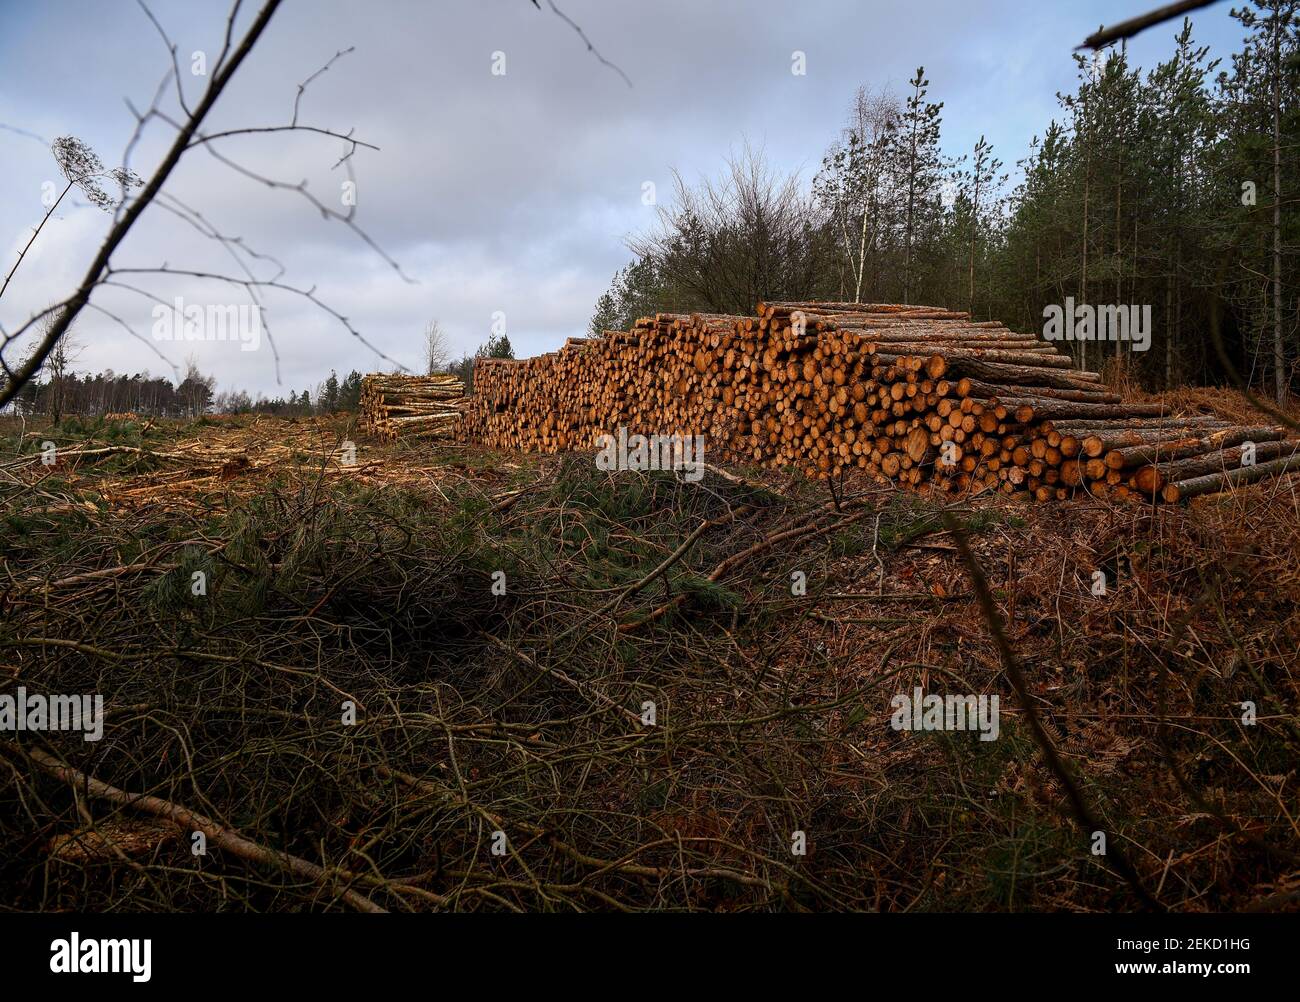 Dégagement forestier des conifères pour restaurer la zone dans la forêt indigène et l'environnement de la lande dans le New Forest Hampshire Angleterre. Partie de l'ensemble d'images. Banque D'Images